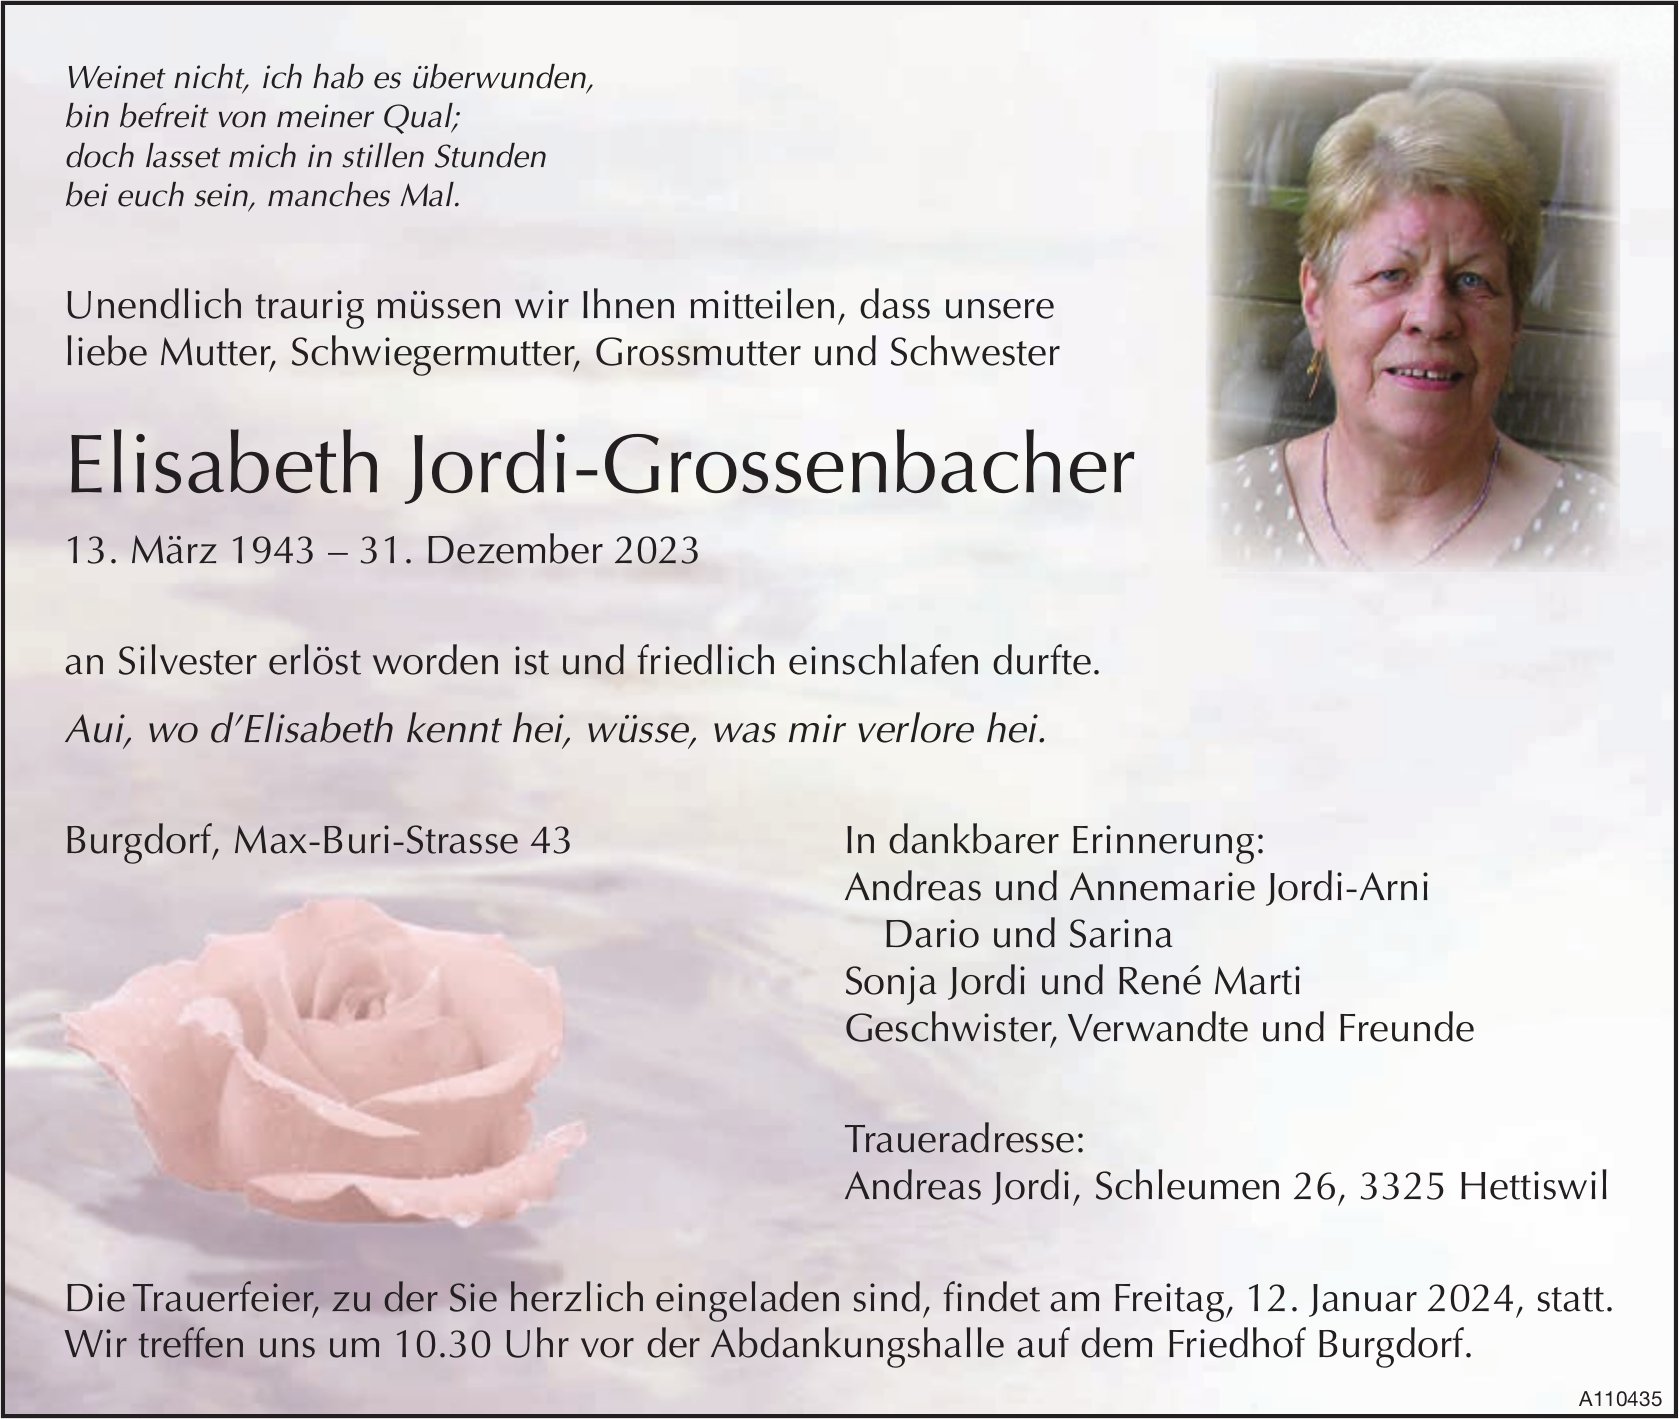 Elisabeth Jordi-Grossenbacher, Dezember 2023 / TA